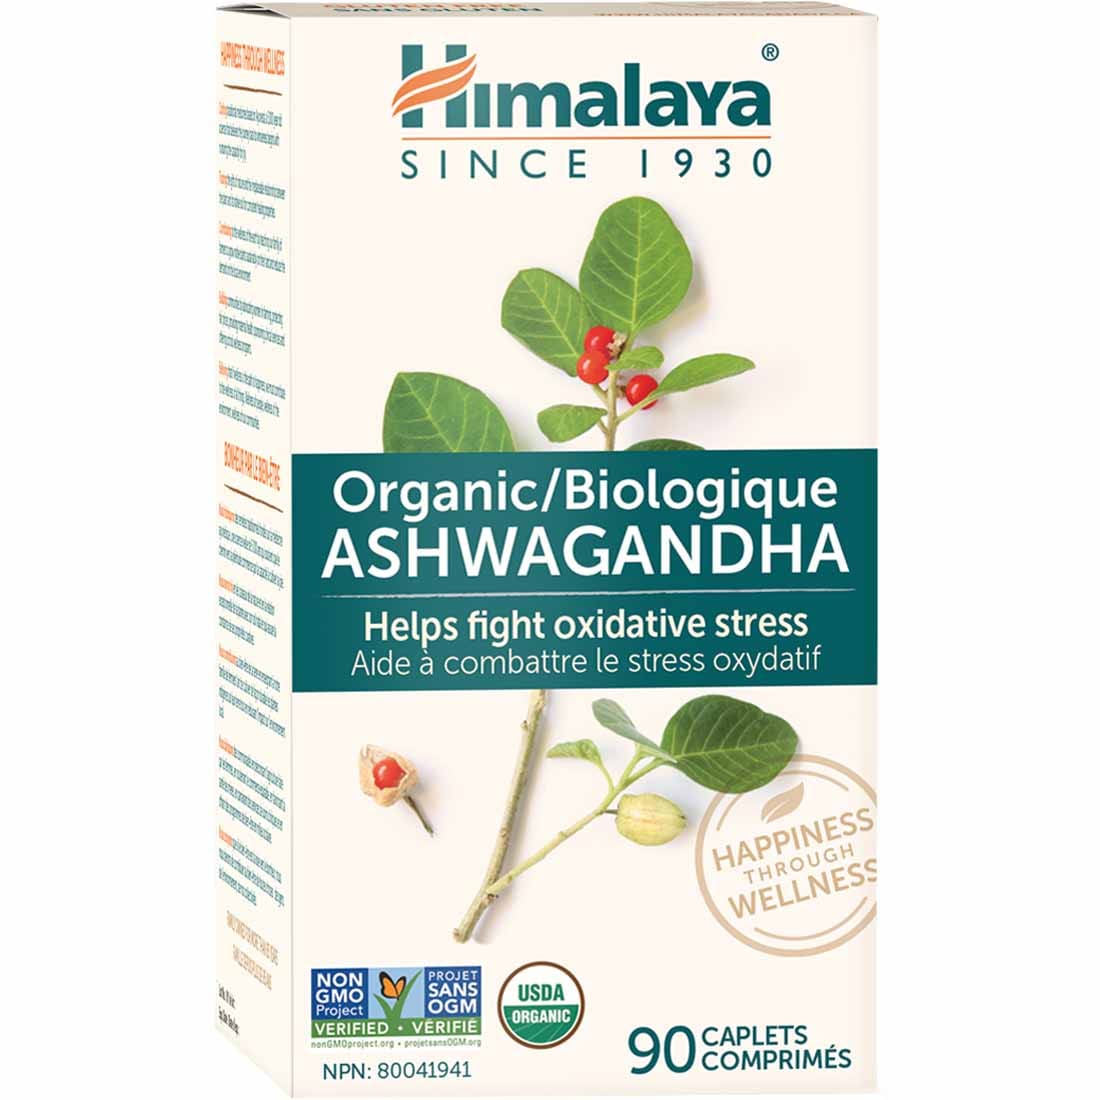 Himalaya Herbal Ashwagandha (Ashwagandha)